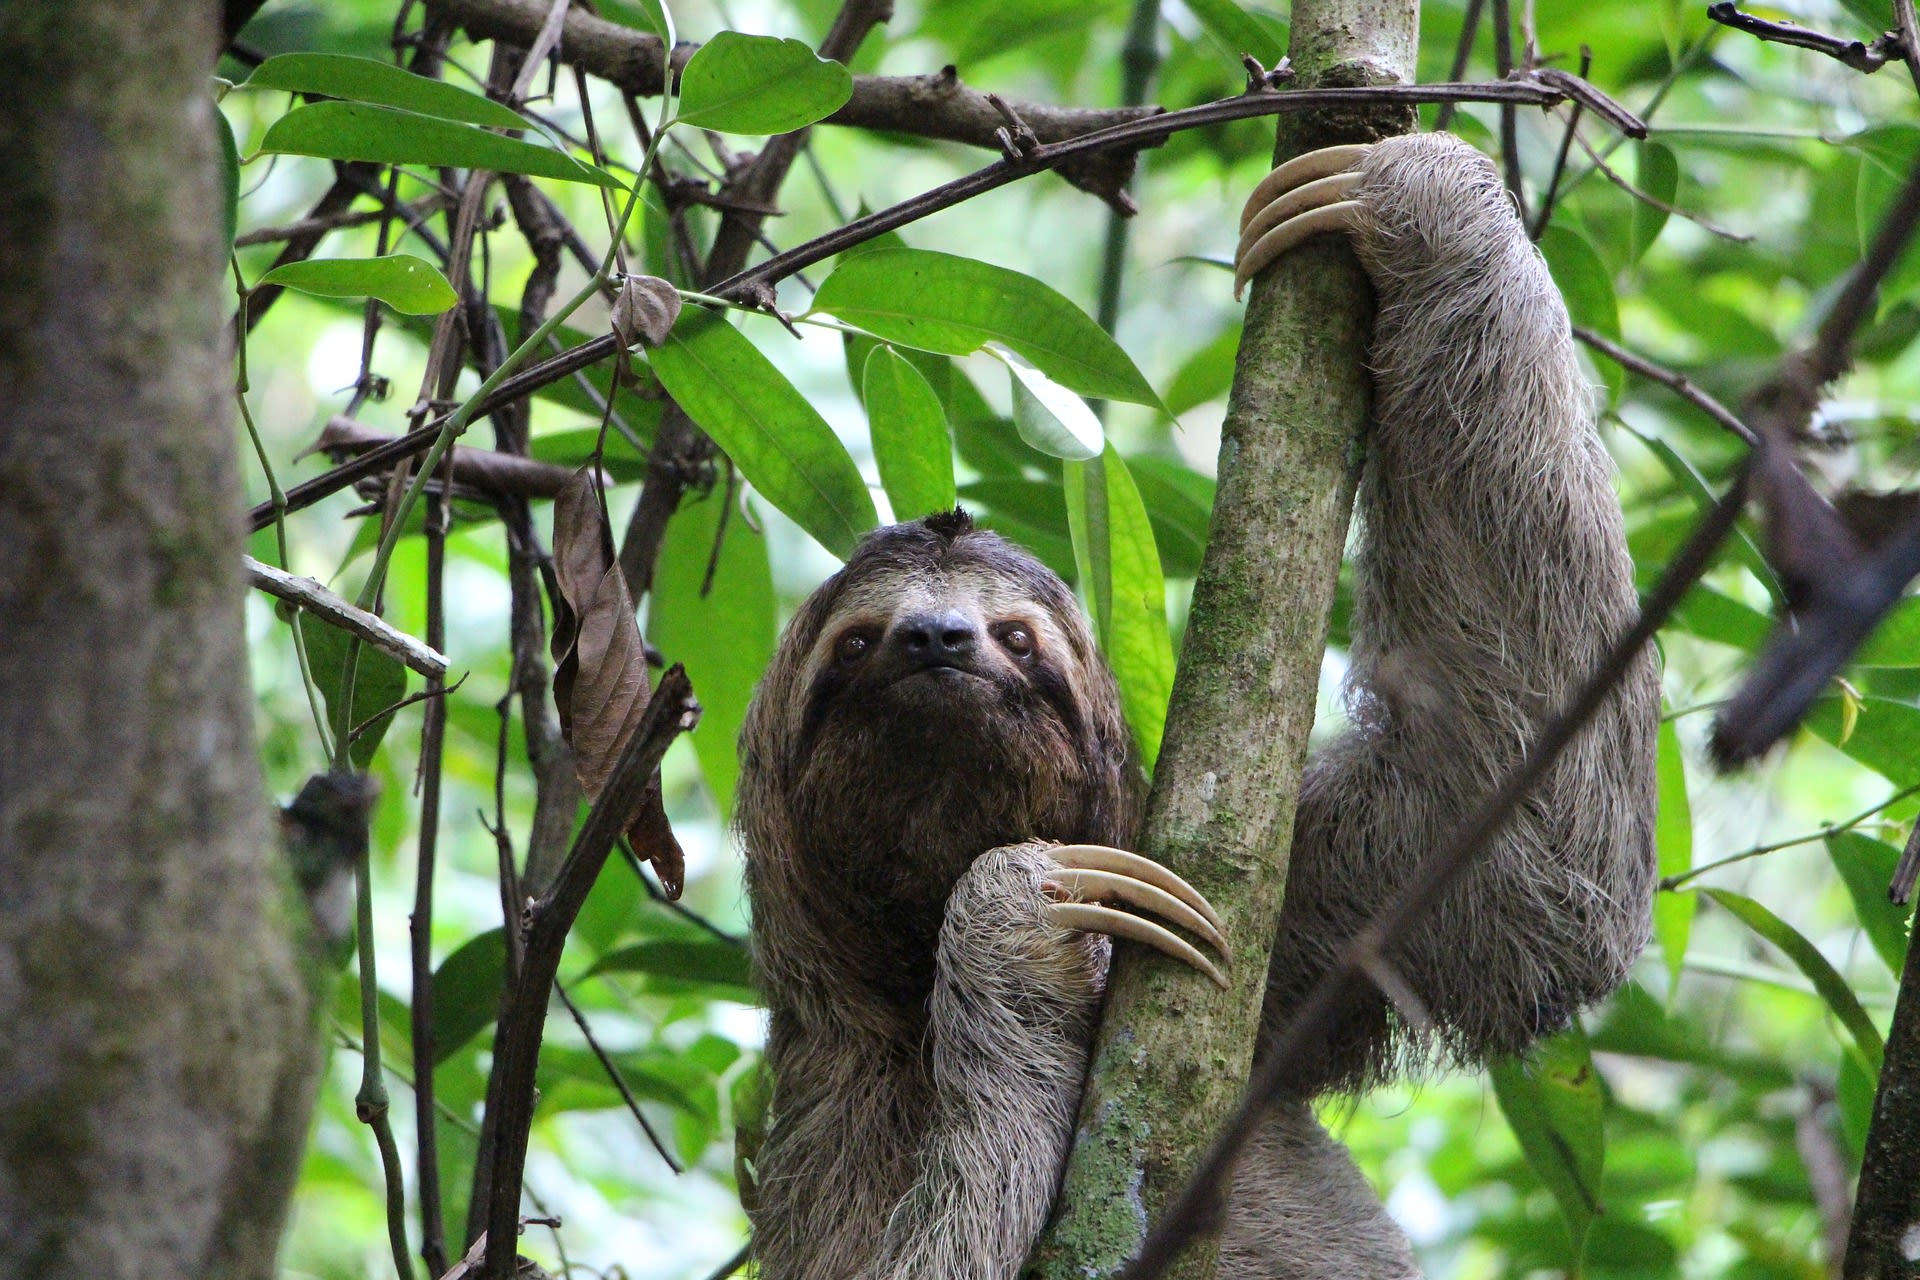 Pevné paže a obří drápy. Díky nim dokáží lenochodi strávit celé dny zavěšení na stromech. Zdroj: Pixabay